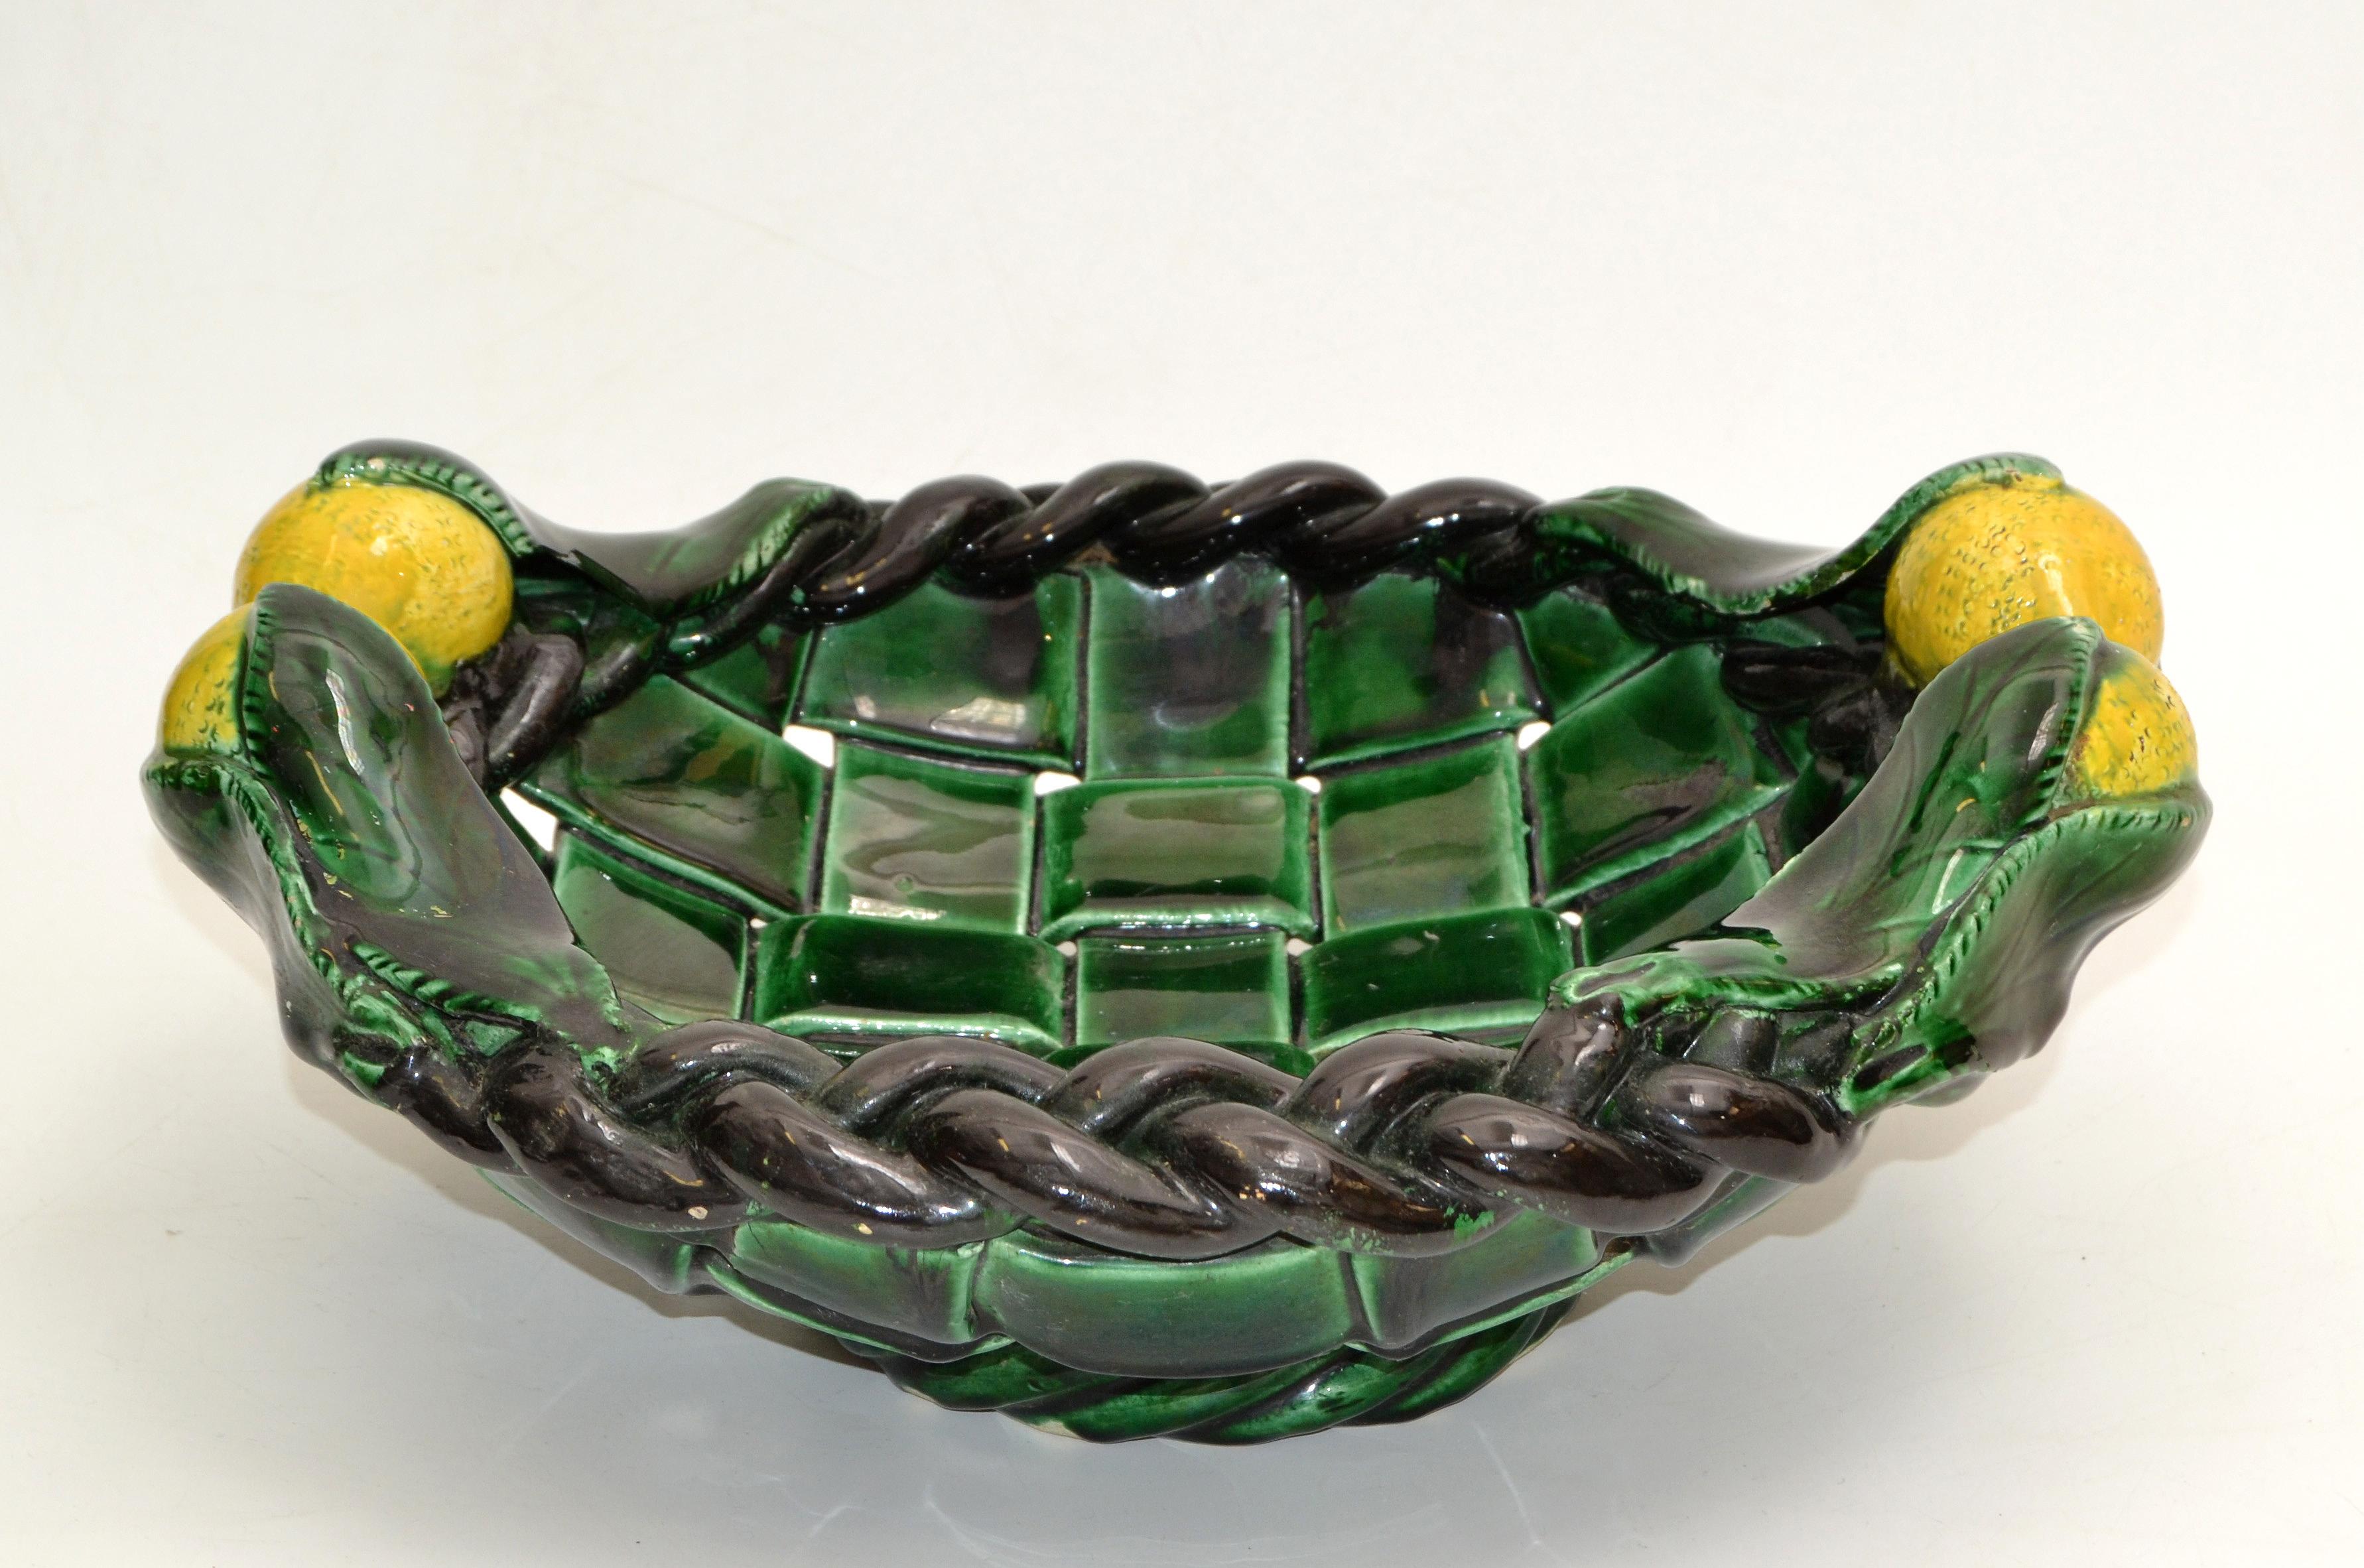 1970er Jahre Mid-Century Modern handgefertigt Keramik, Keramik Zitronenkorb oder Obstteller in glasiert dunkelgrün und schwarz mit gelben Zitronen, in Vallauris gemacht.
Darunter ist markiert.